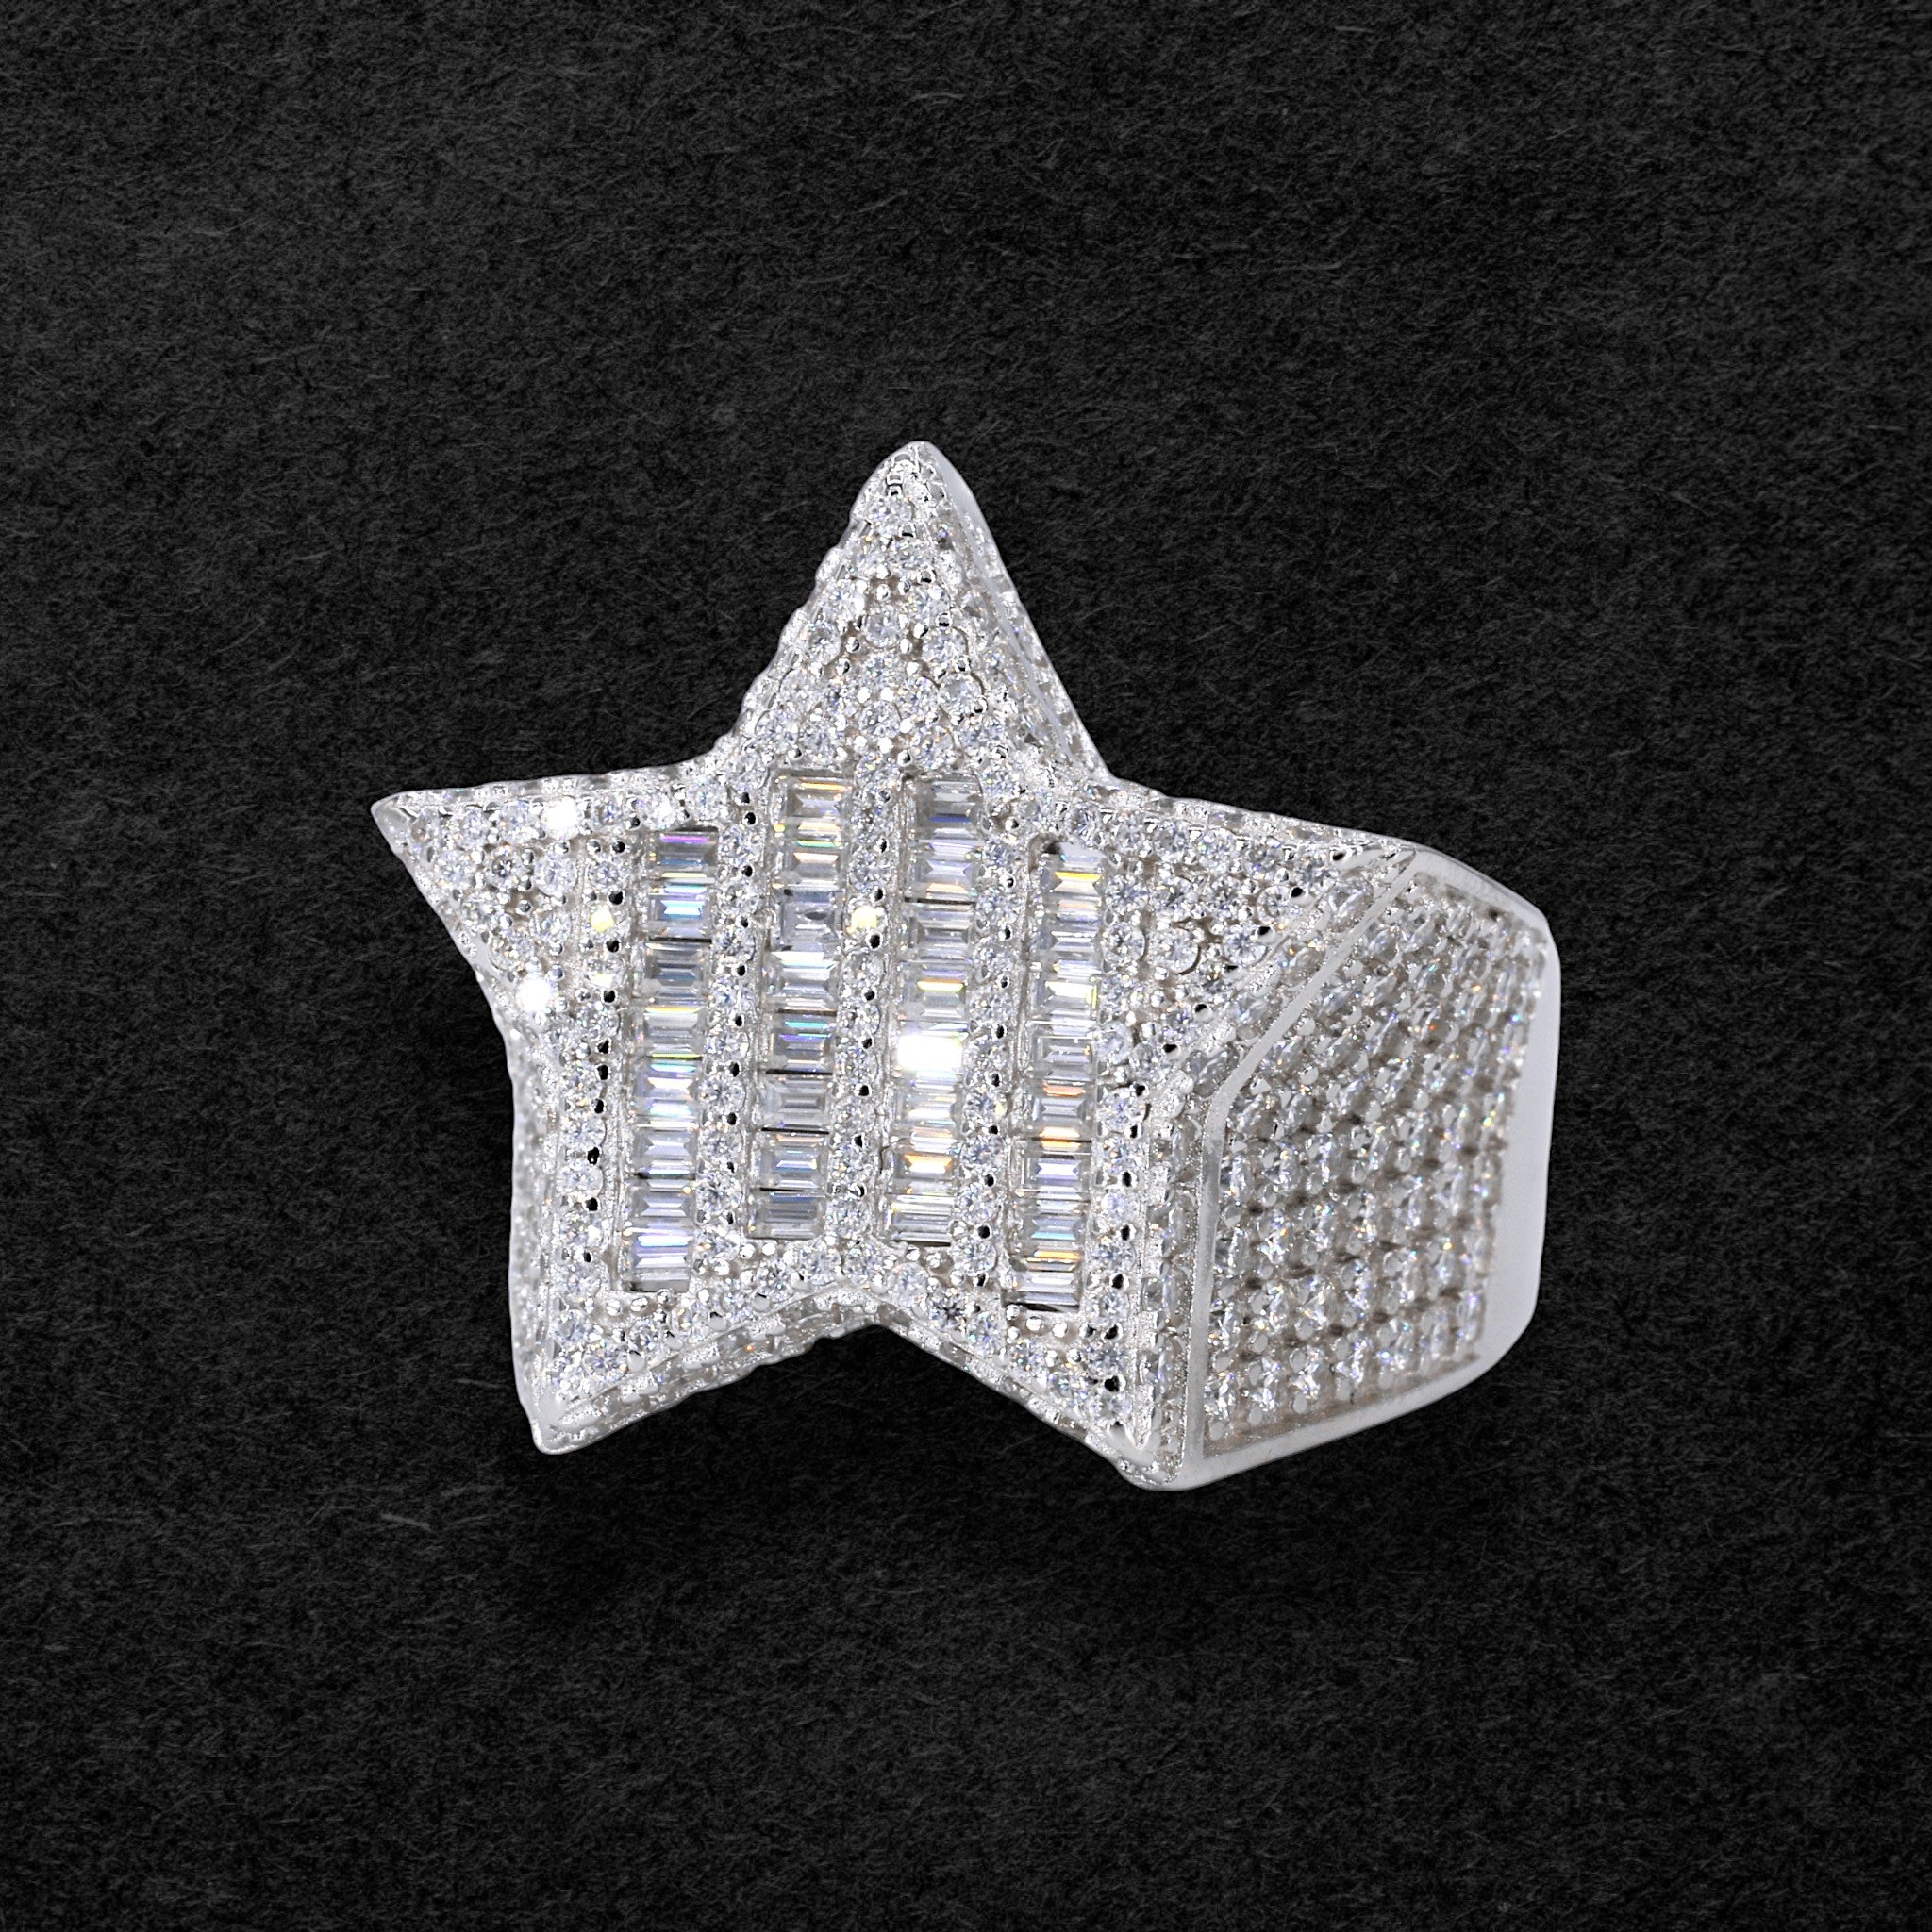 Radiant Baguette Star VVS Moissanite Diamond Ring